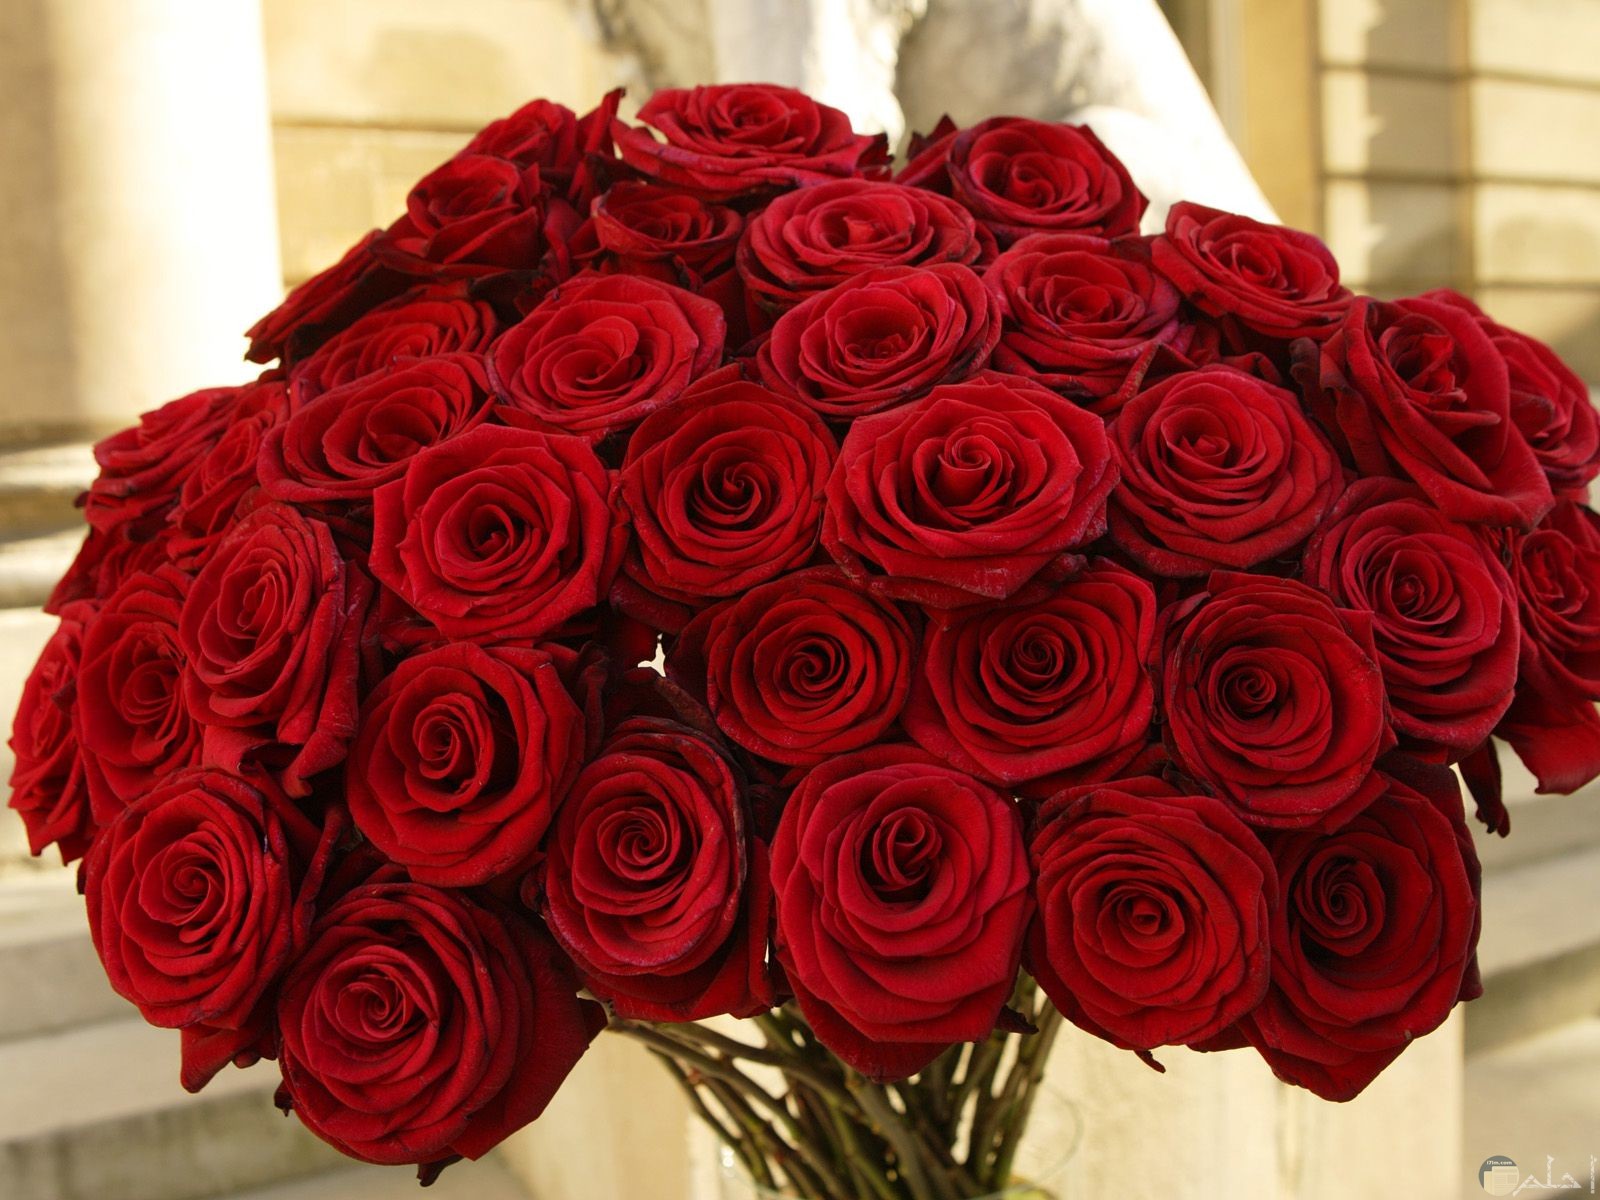 صورة لمجموعة من الورد الأحمر الجميل في باقة ورد رومانسية